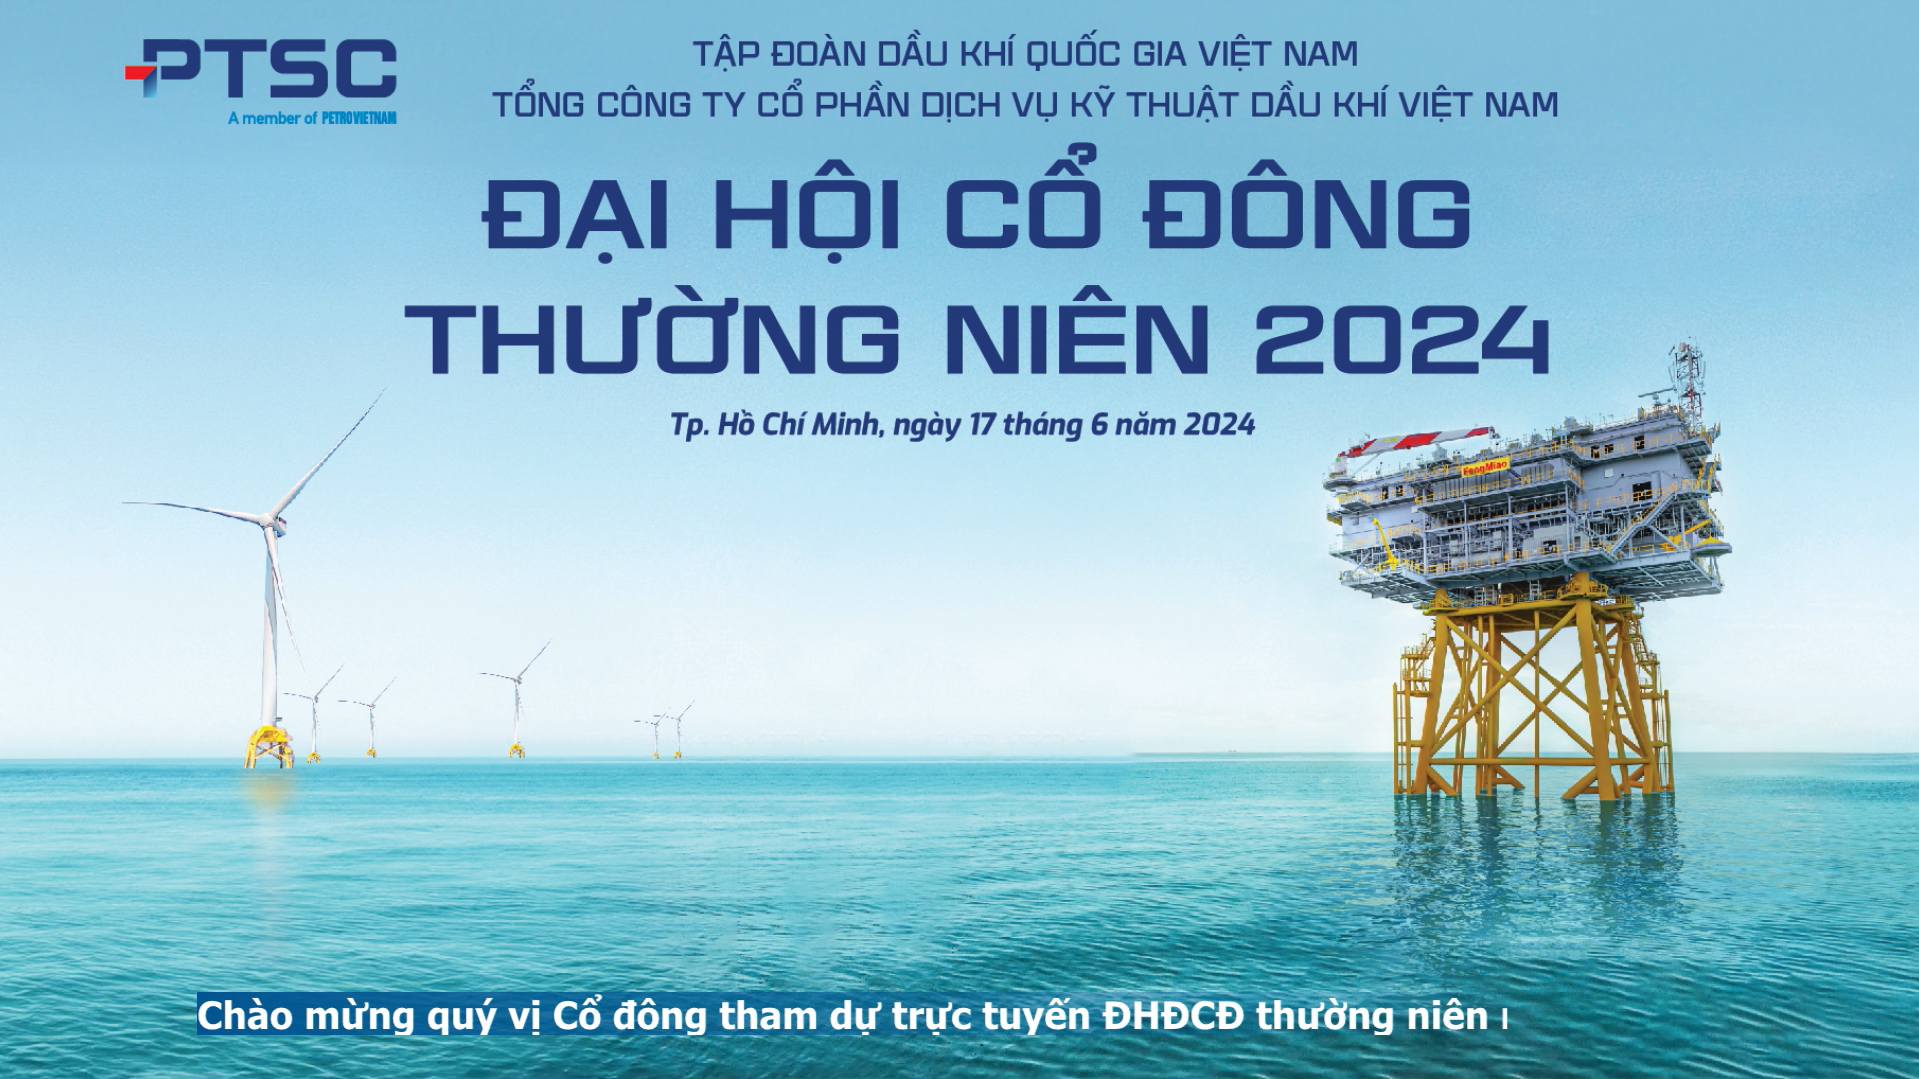 Đại hội cổ đông thường niên 2024 Tổng công ty Cổ phần Dịch vụ Kỹ thuật Dầu khí Việt Nam PTSC